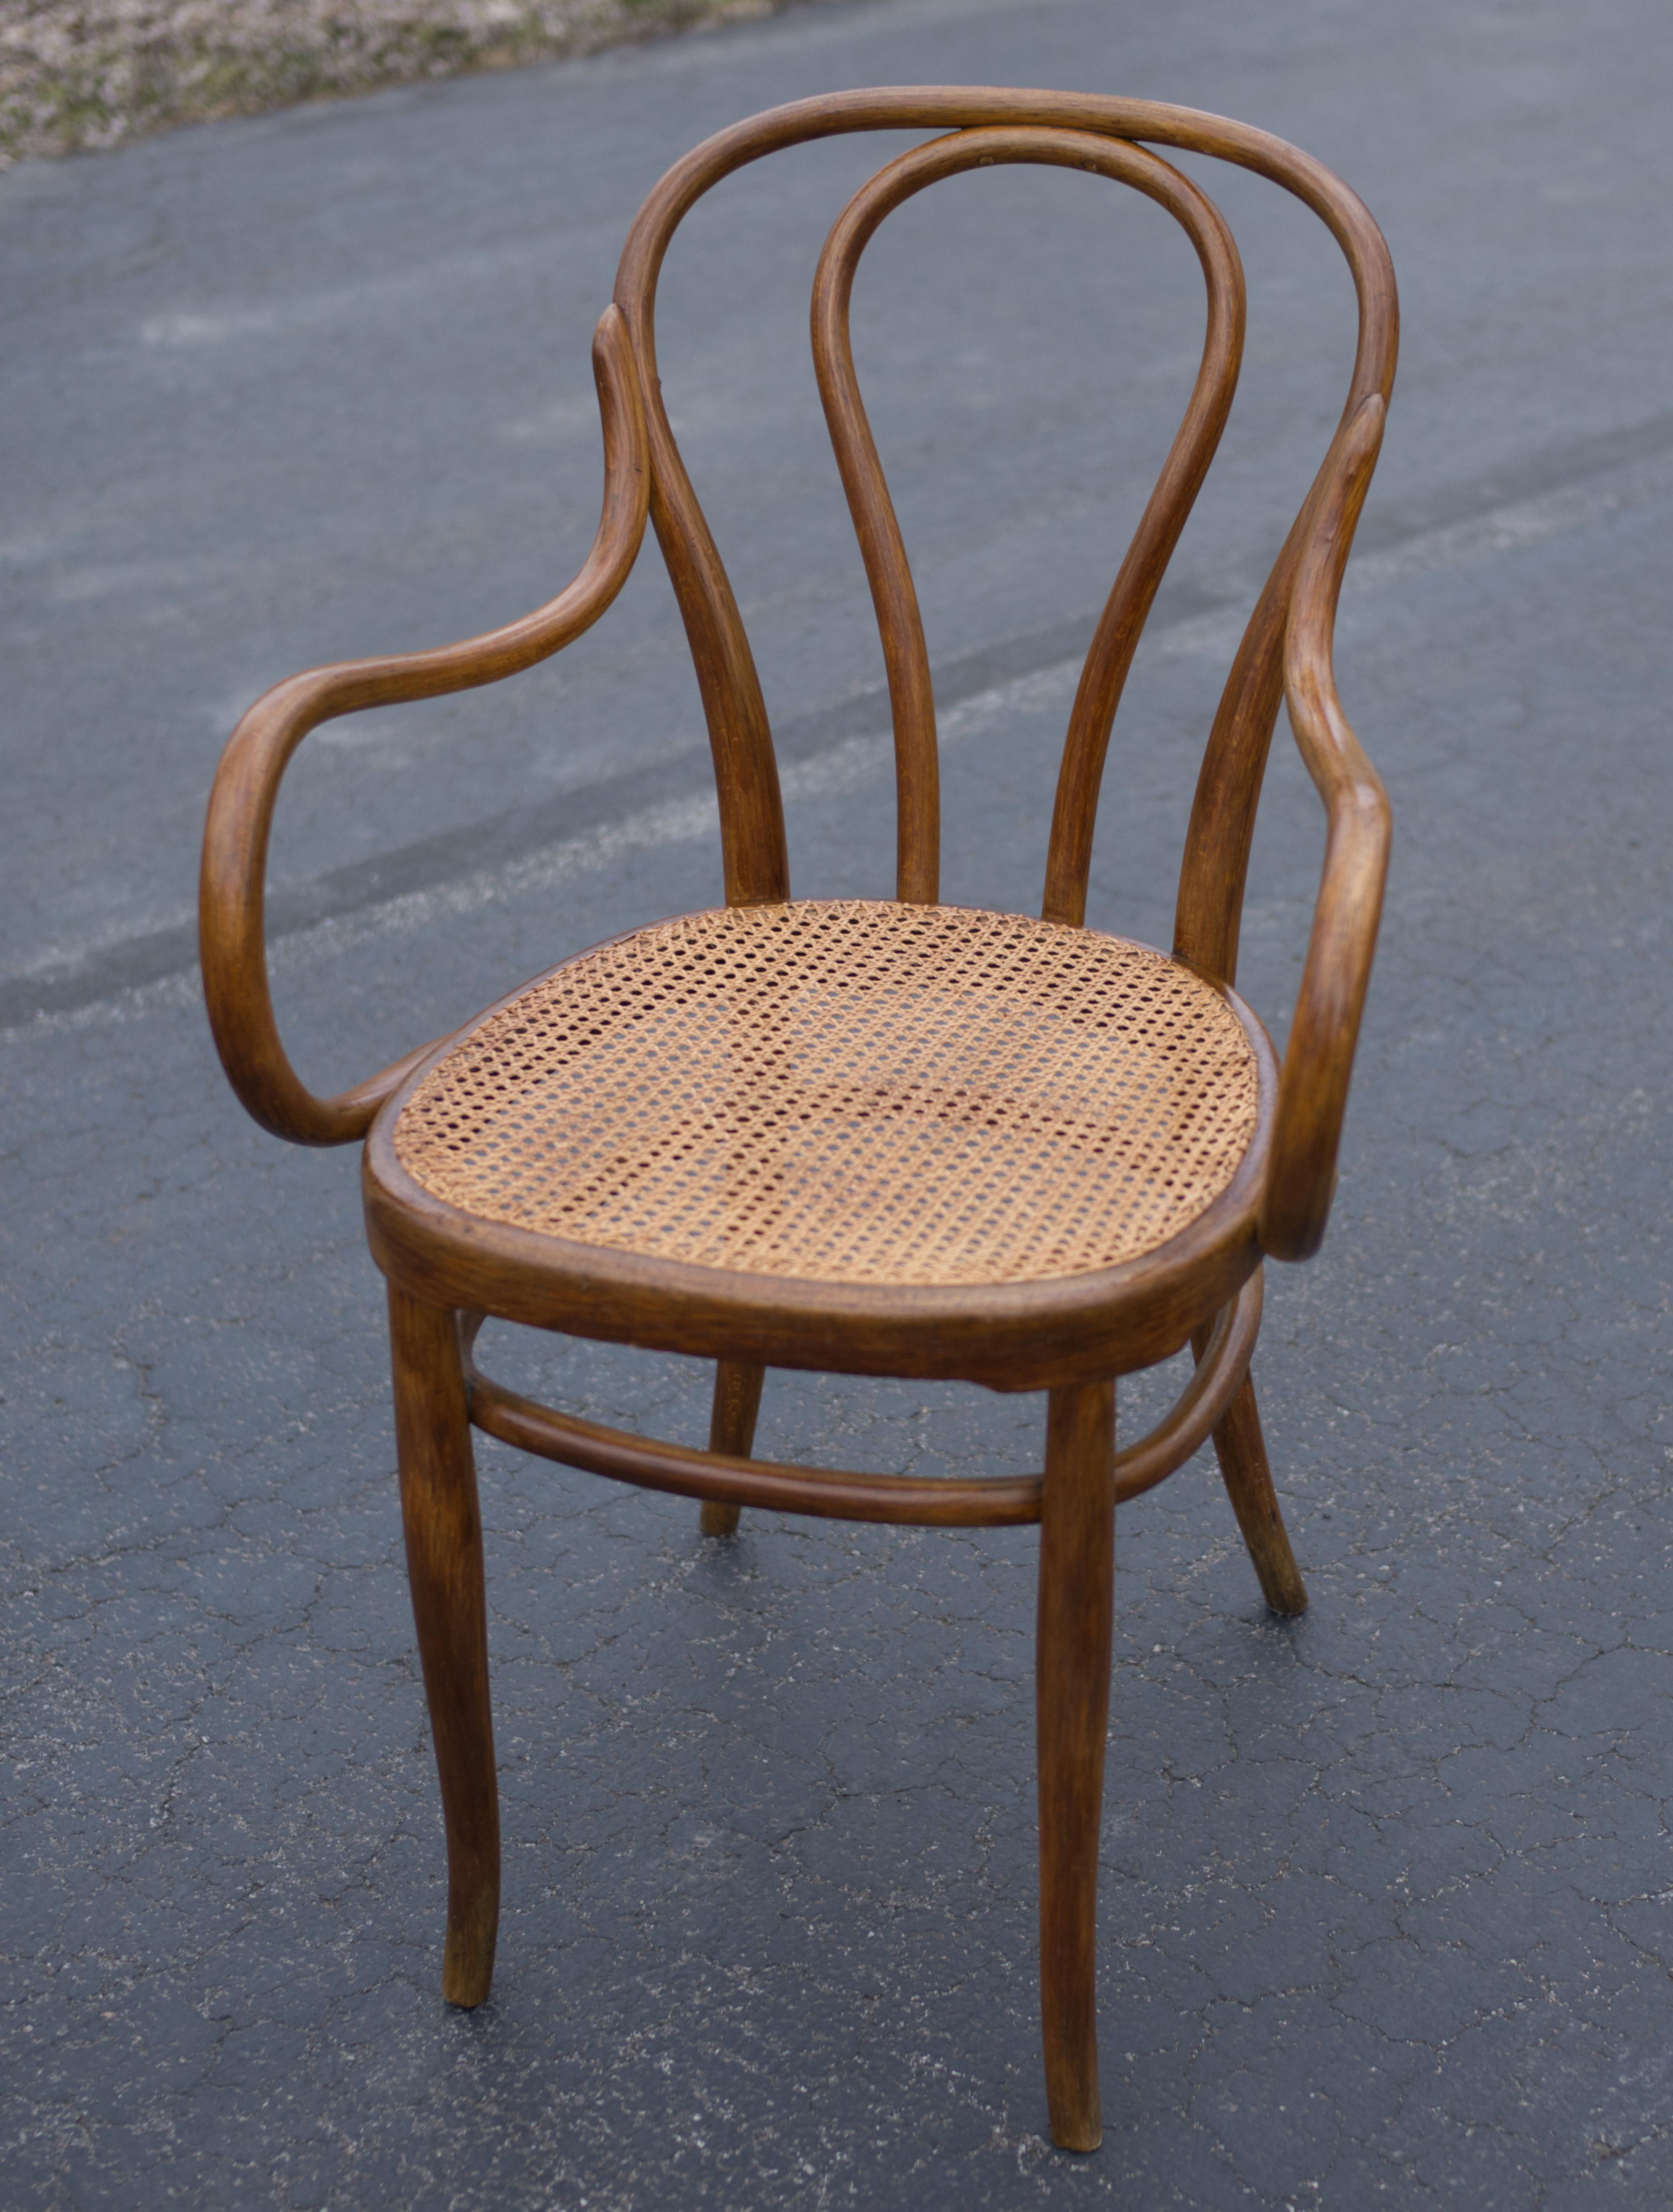 Sehr schöner J&J Kohn 18, 1/2 Modell Sessel. J&J war der Hauptkonkurrent von Thonet, und die beiden Unternehmen konkurrierten ständig miteinander und waren wegen der Ähnlichkeiten zwischen den Möbelmodellen in Gerichtsverfahren verwickelt. 
Eine der